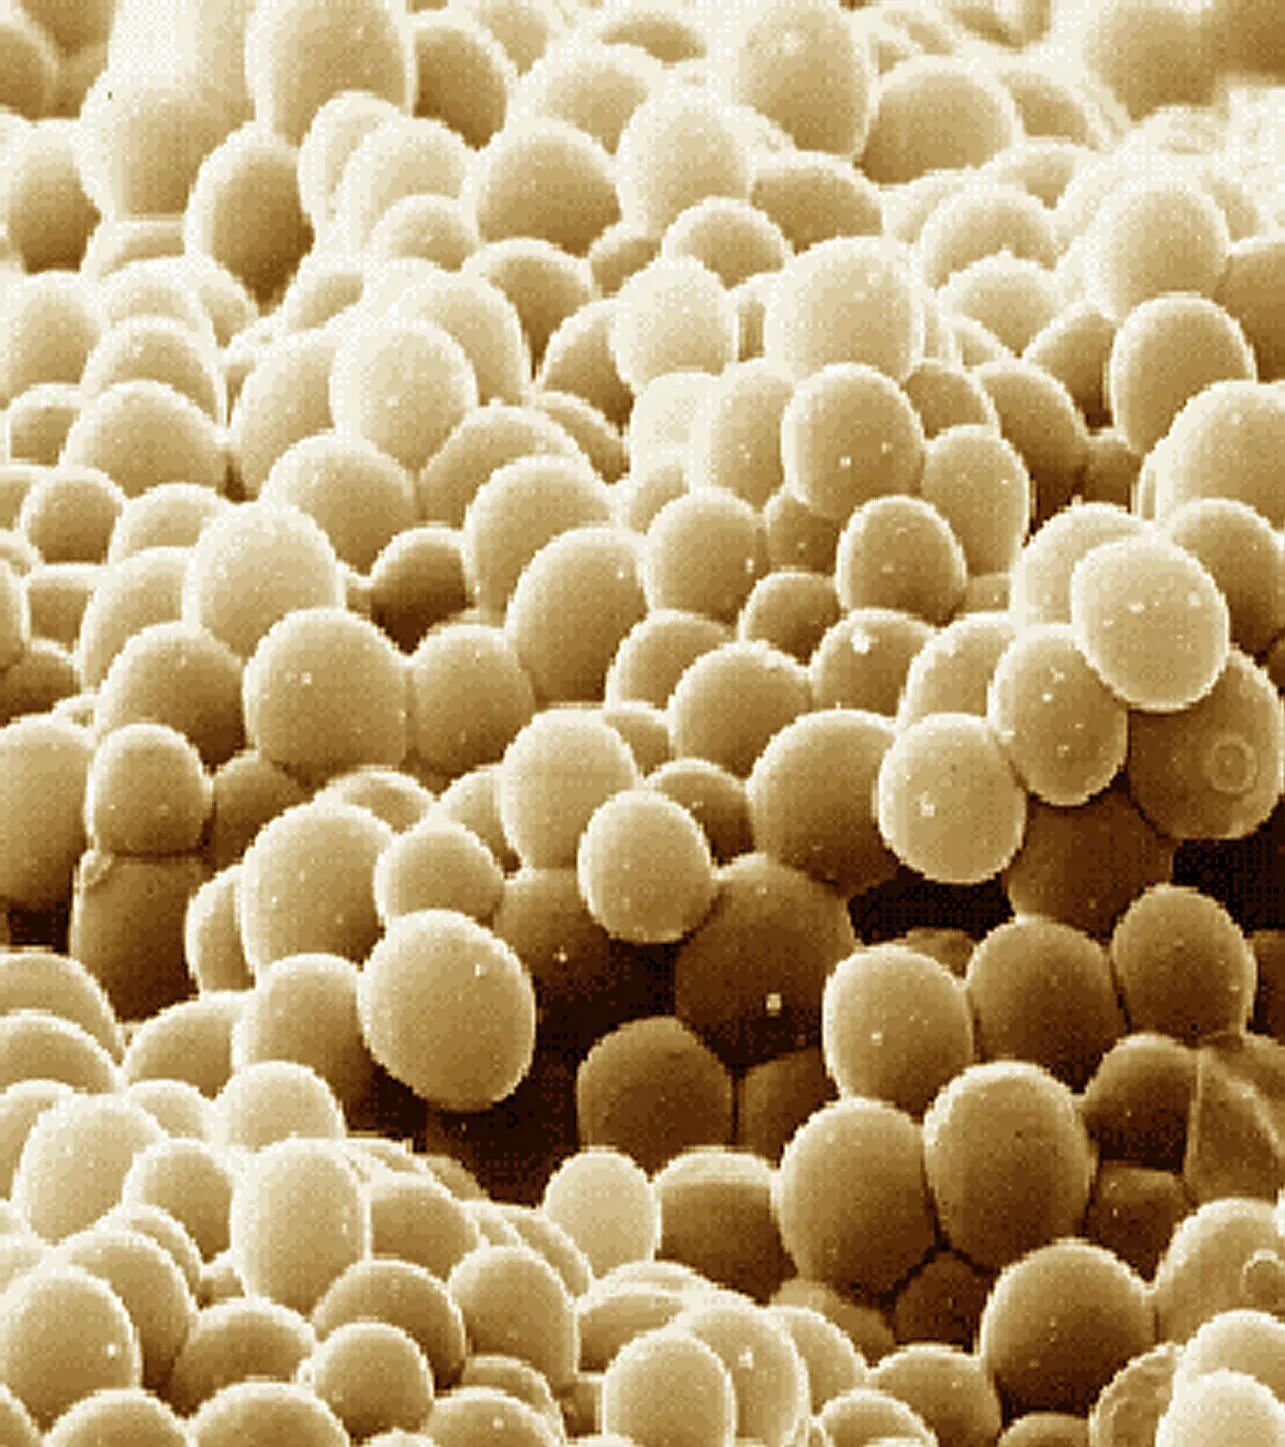 Дрожжи живые организмы. Дрожжи Saccharomyces cerevisiae. Saccharomyces cerevisiae под микроскопом. Дрожжи одноклеточные грибы. Одноклеточные грибы дрожжи сахаромицеты.